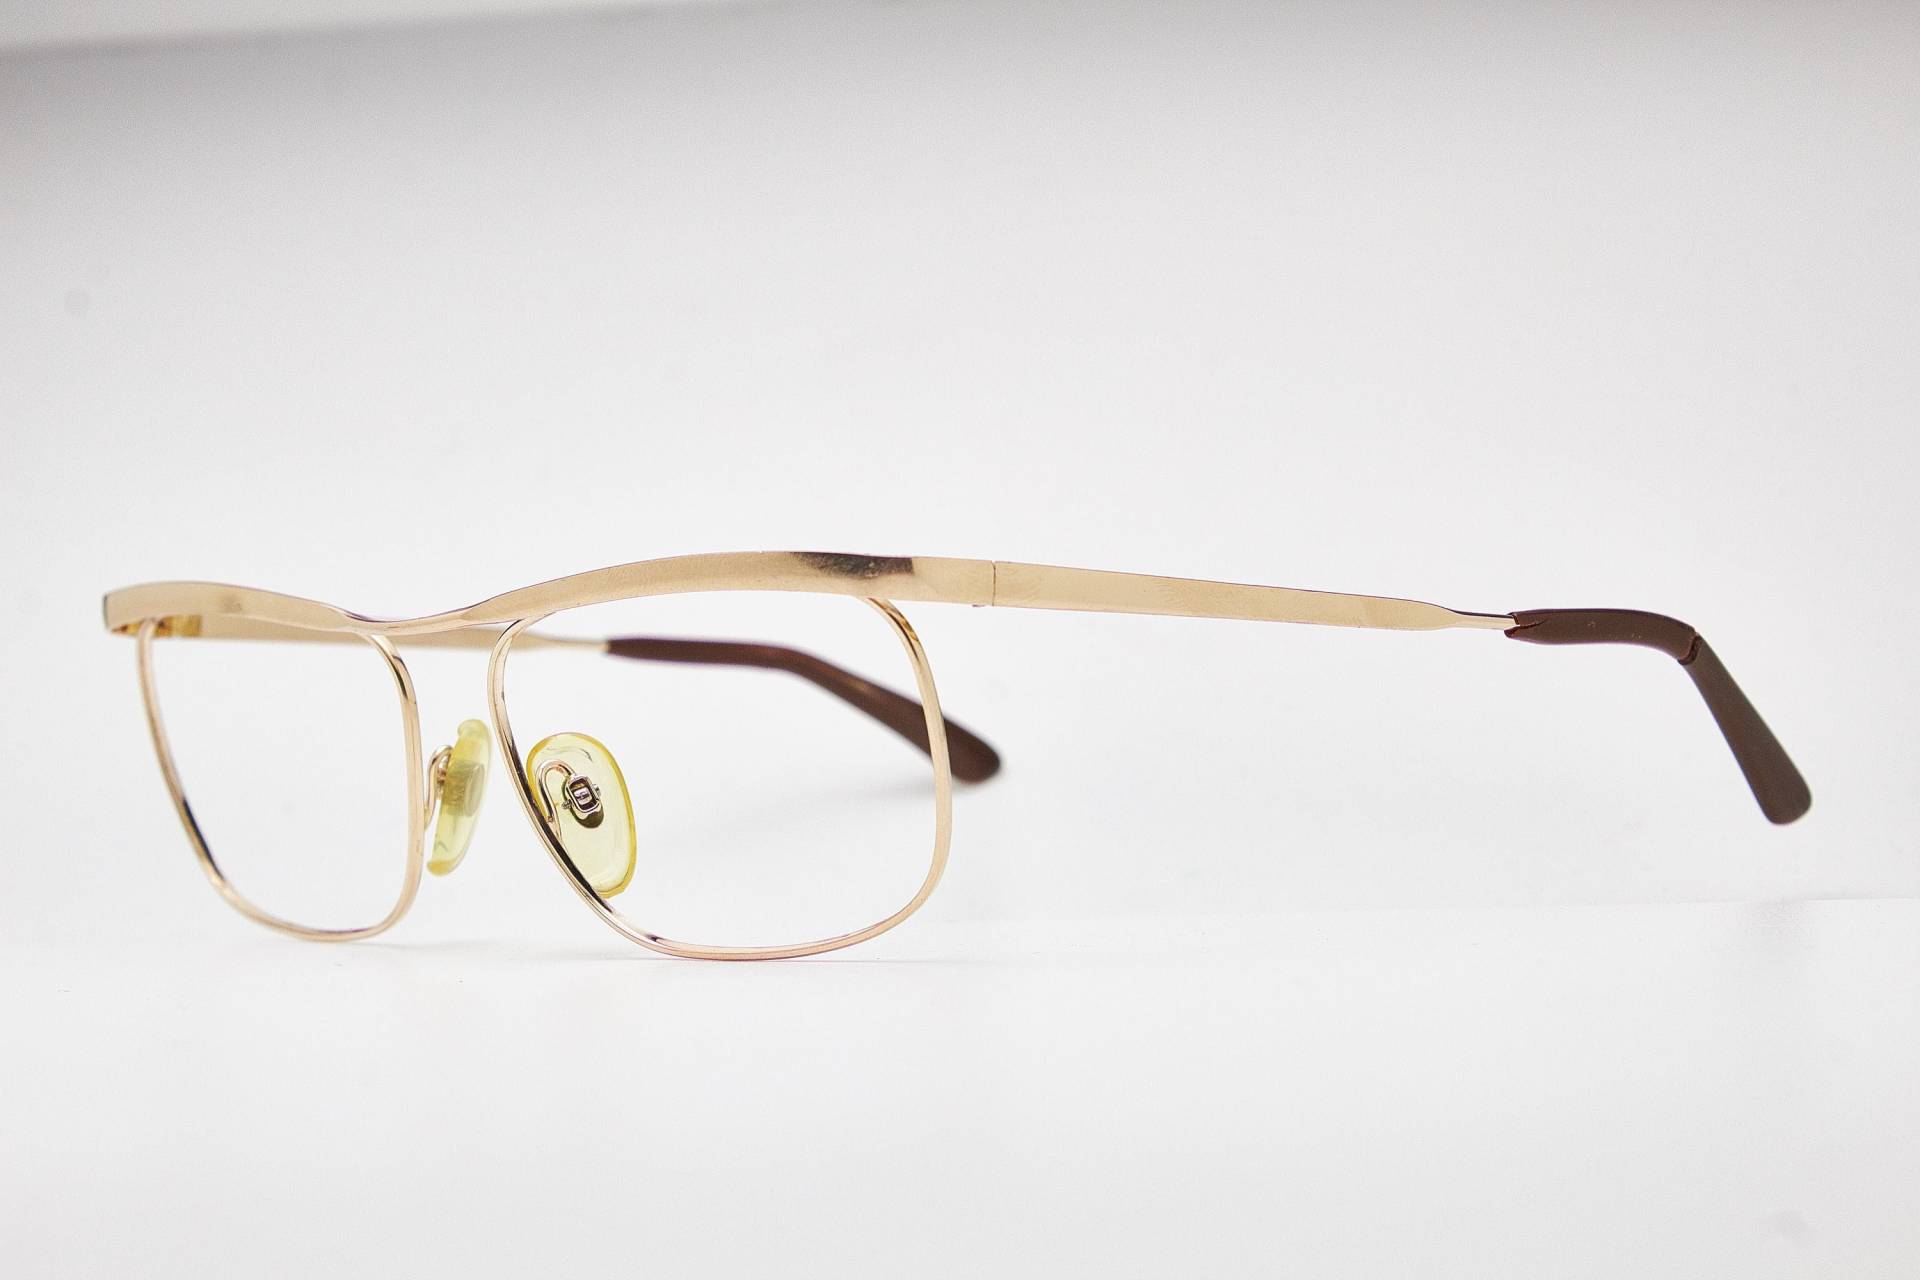 Rodenstock Brille Carltone Flach 12K Gp Rahmen, Vintage 1980Er Jahre, Fliegerbrille, Oversize Sonnenbrille, Pilotenbrille, 80Er von VintageGlassesVault